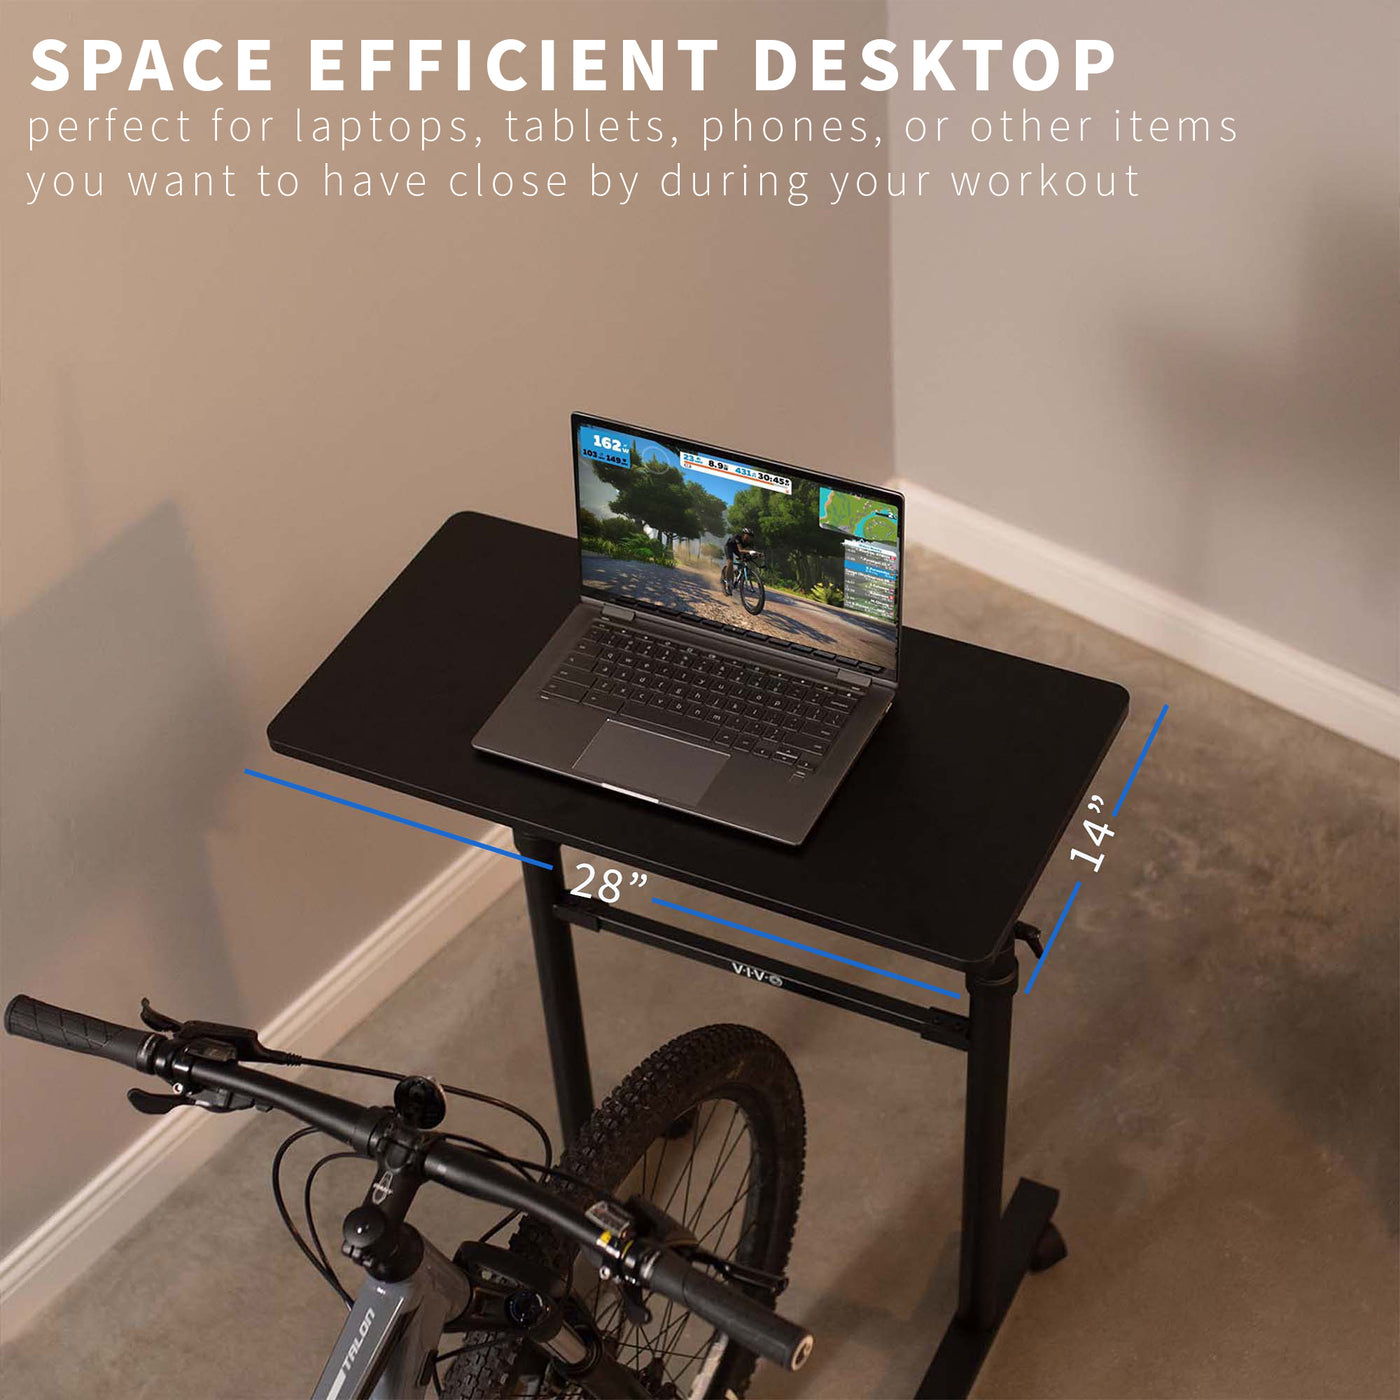 Space efficient height adjustable stationary exercise bike workstation desktop.